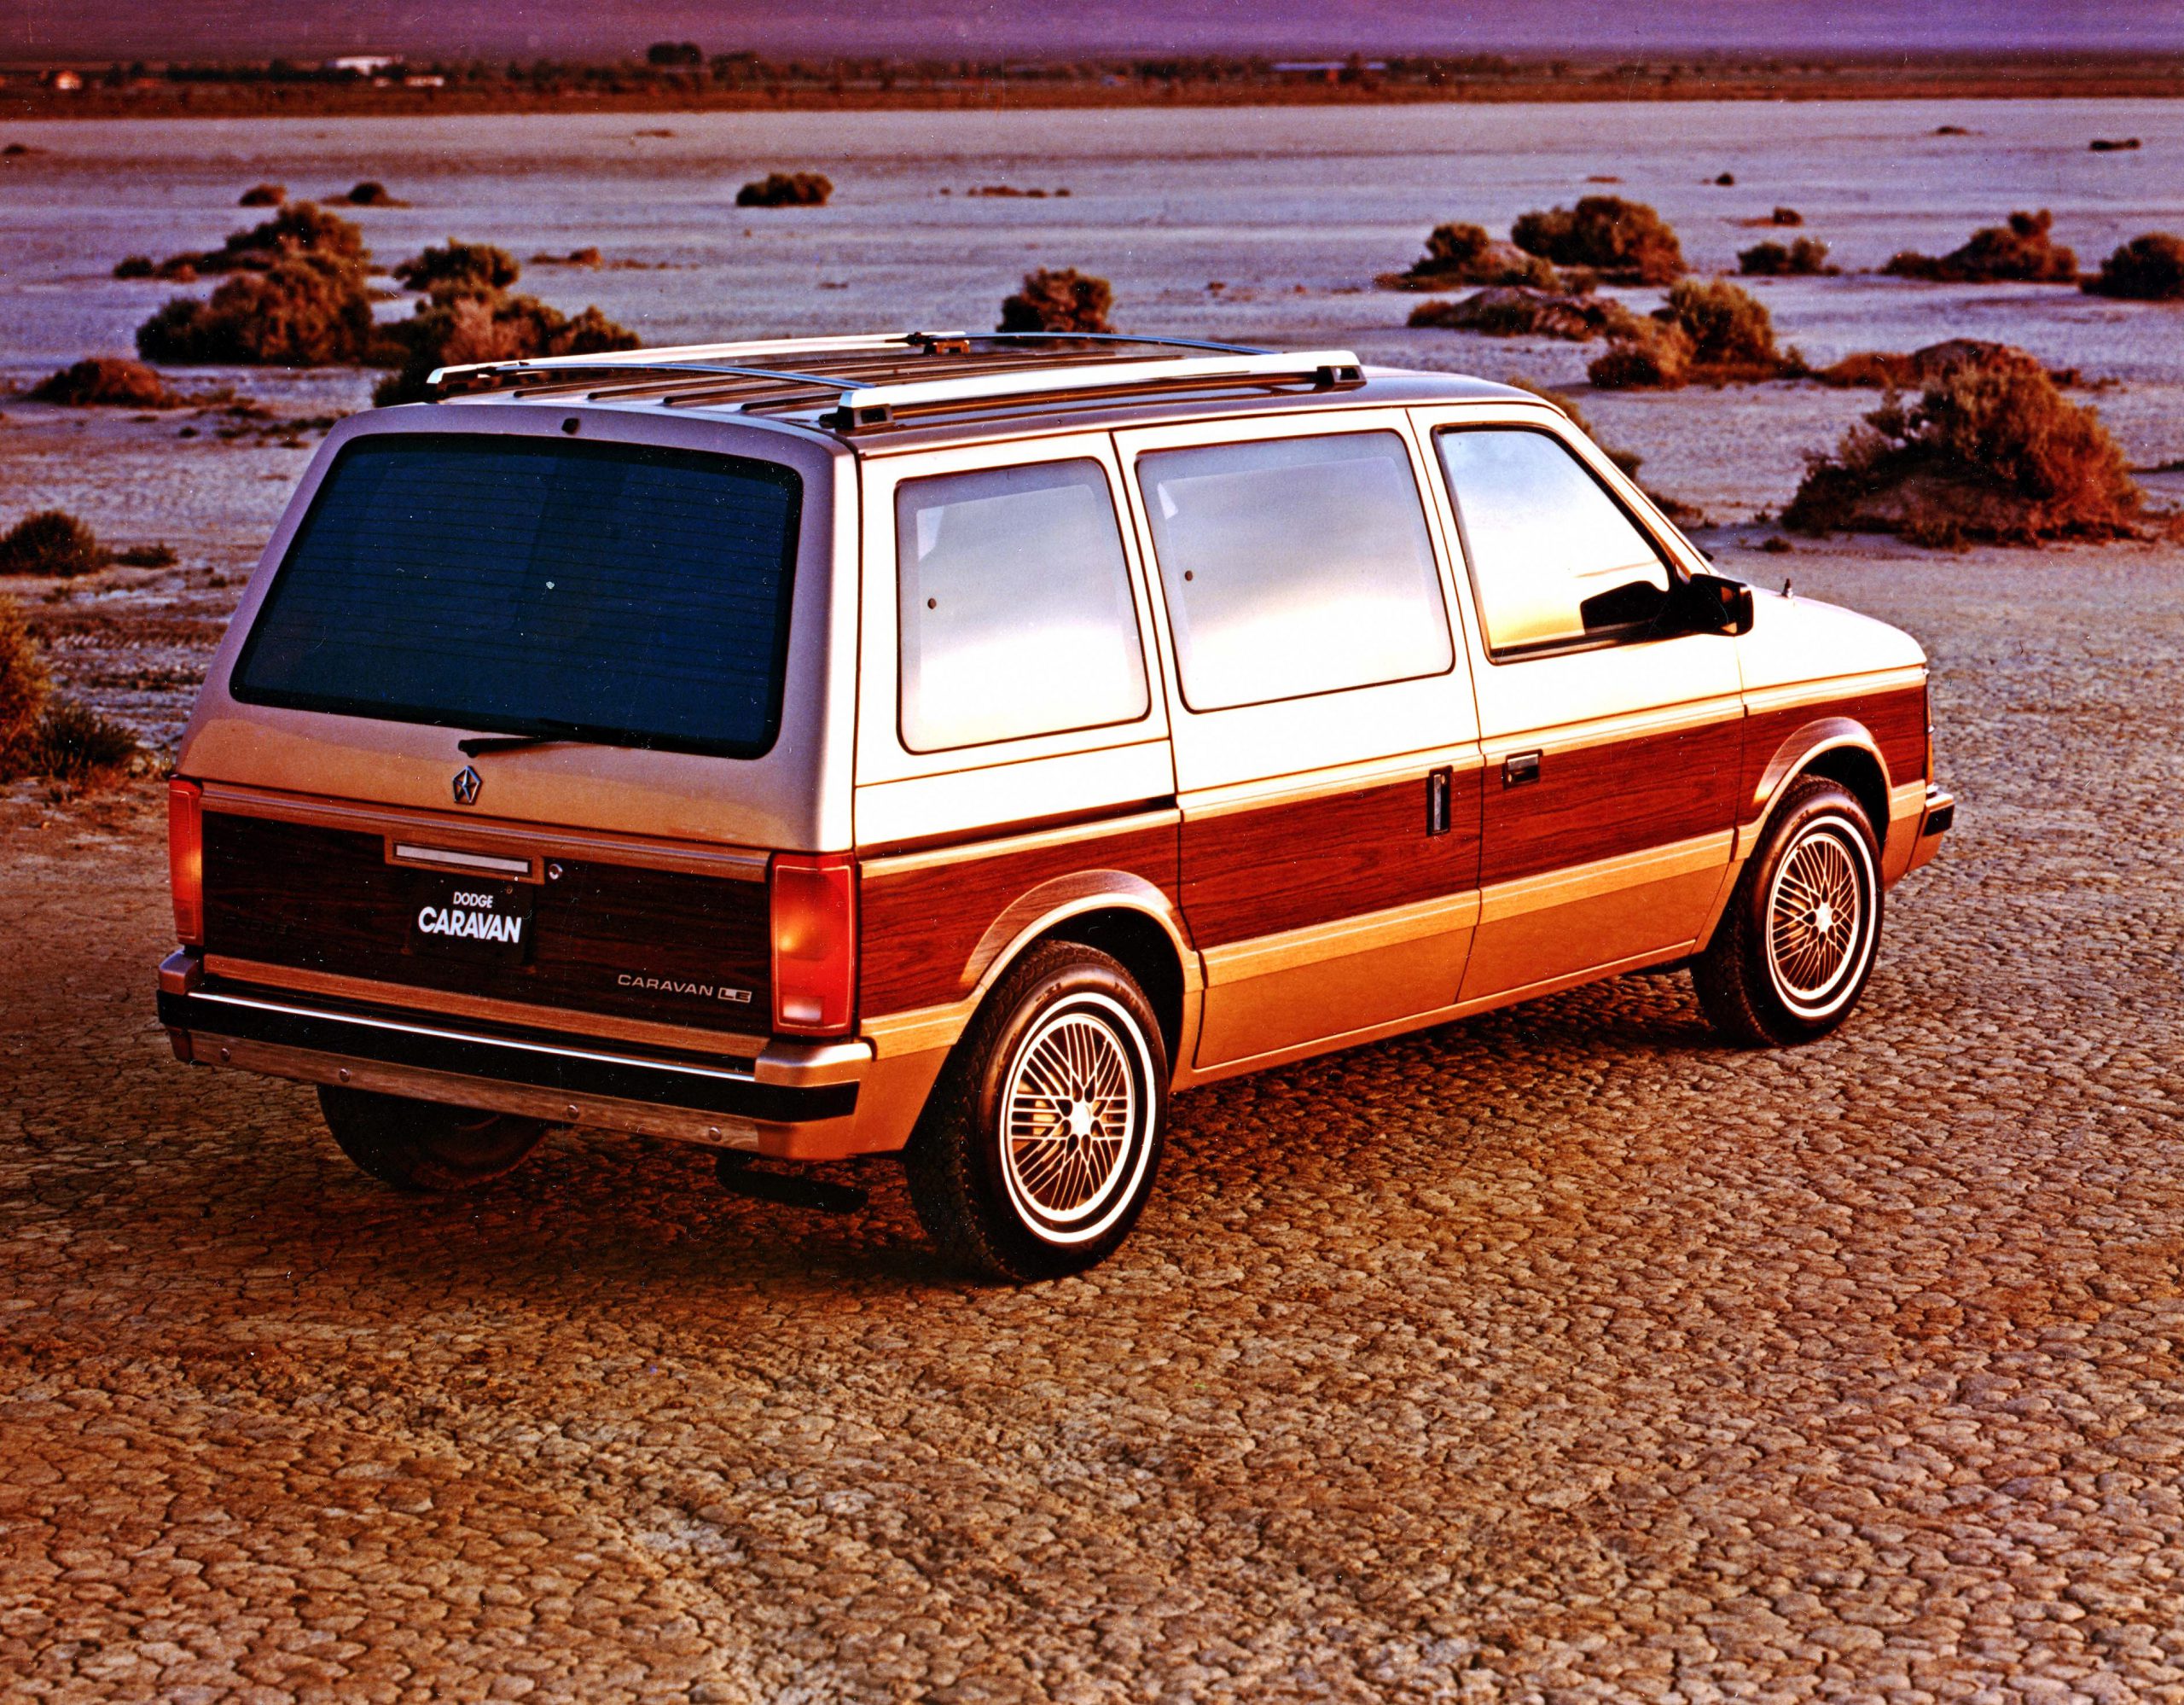 Караван бел. Dodge Caravan 1984-1990. Додж Караван 1. Dodge Caravan 1984. Chrysler Caravan 1990.